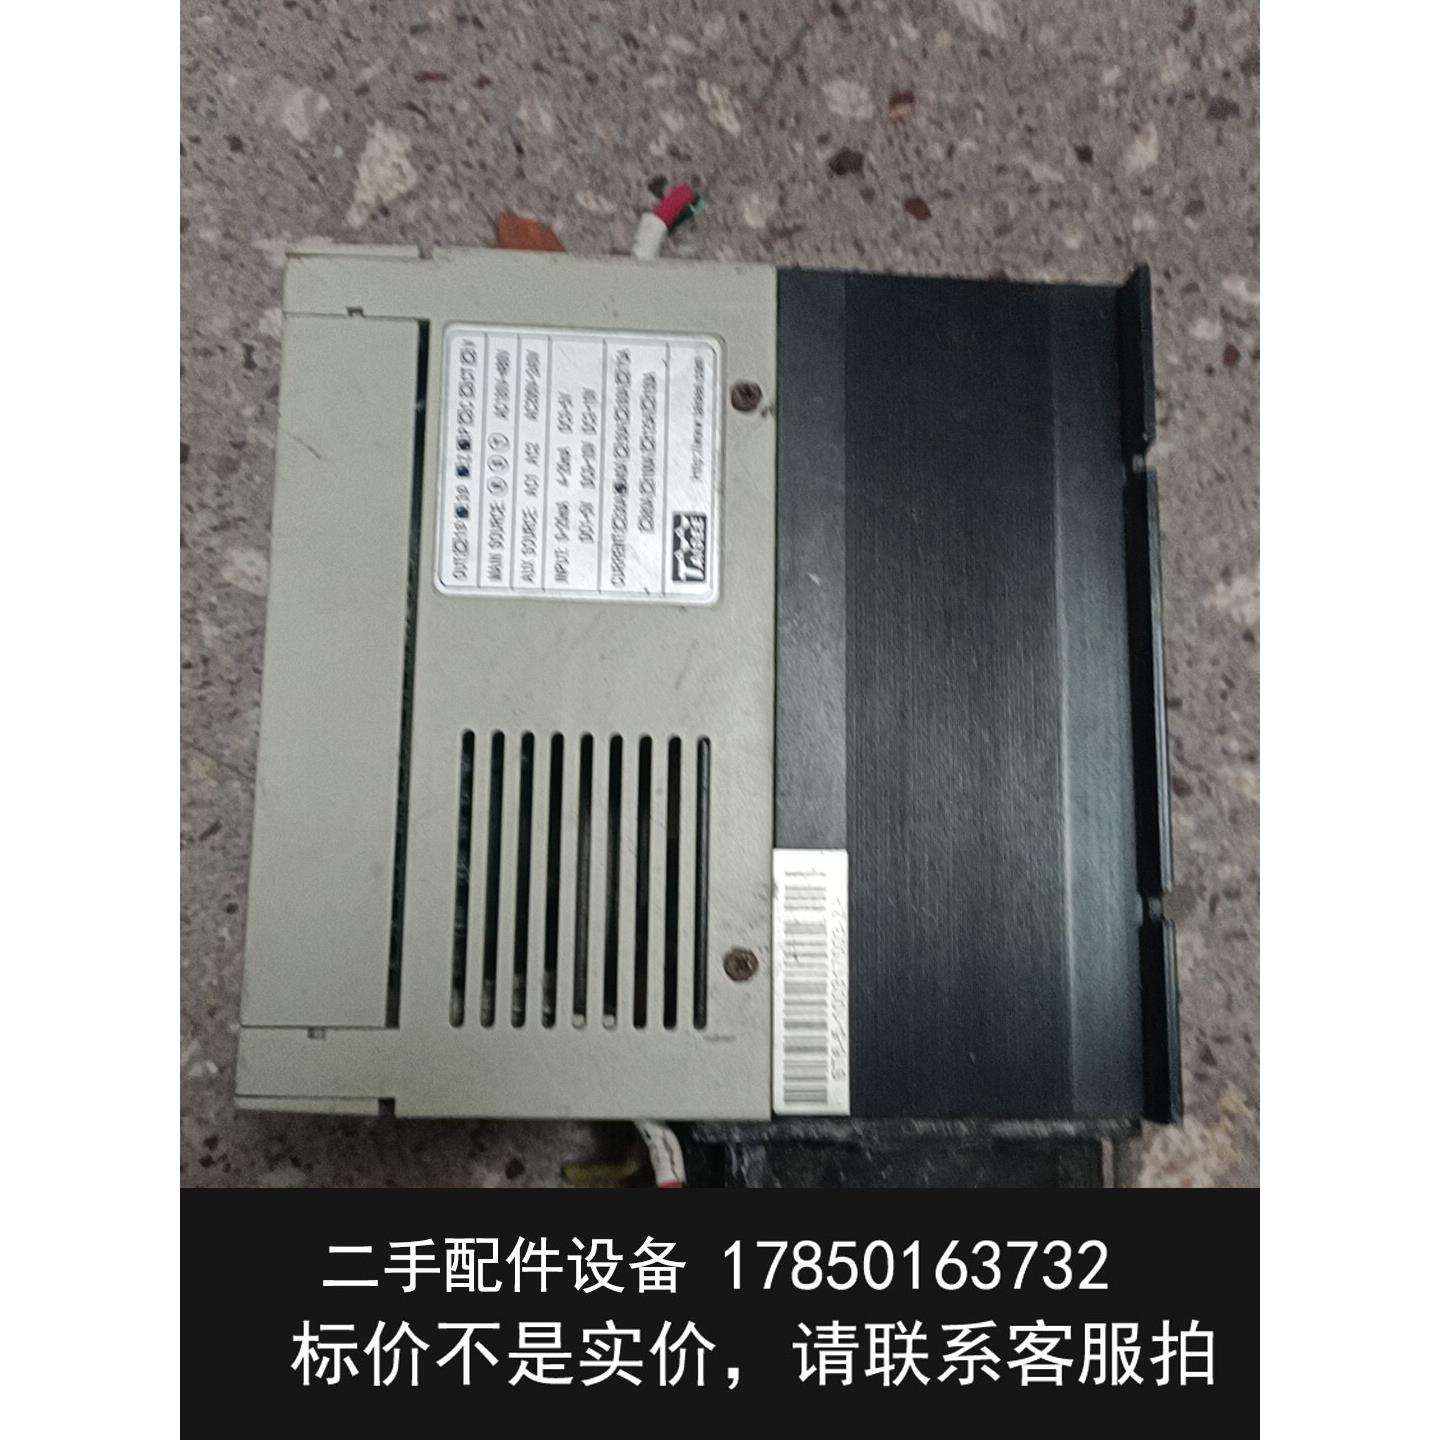 议价台湾泰矽/TAISEE电力调整器ST6-5-4-040ZP实-封面